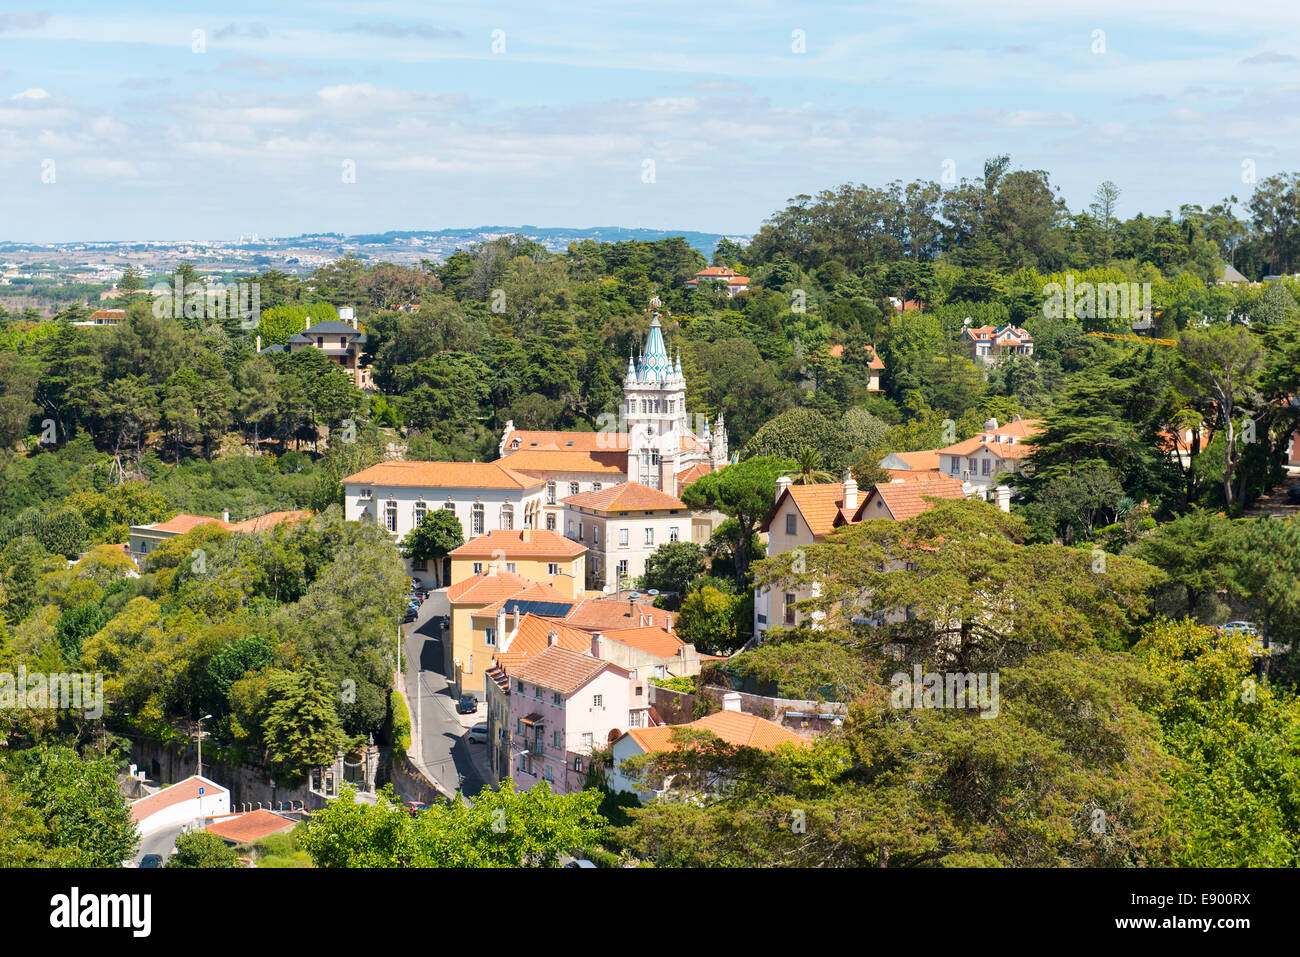 Portugal Sintra Vue panoramique de la ville centre centre Camara Municipal bois environnants les collines au loin Banque D'Images